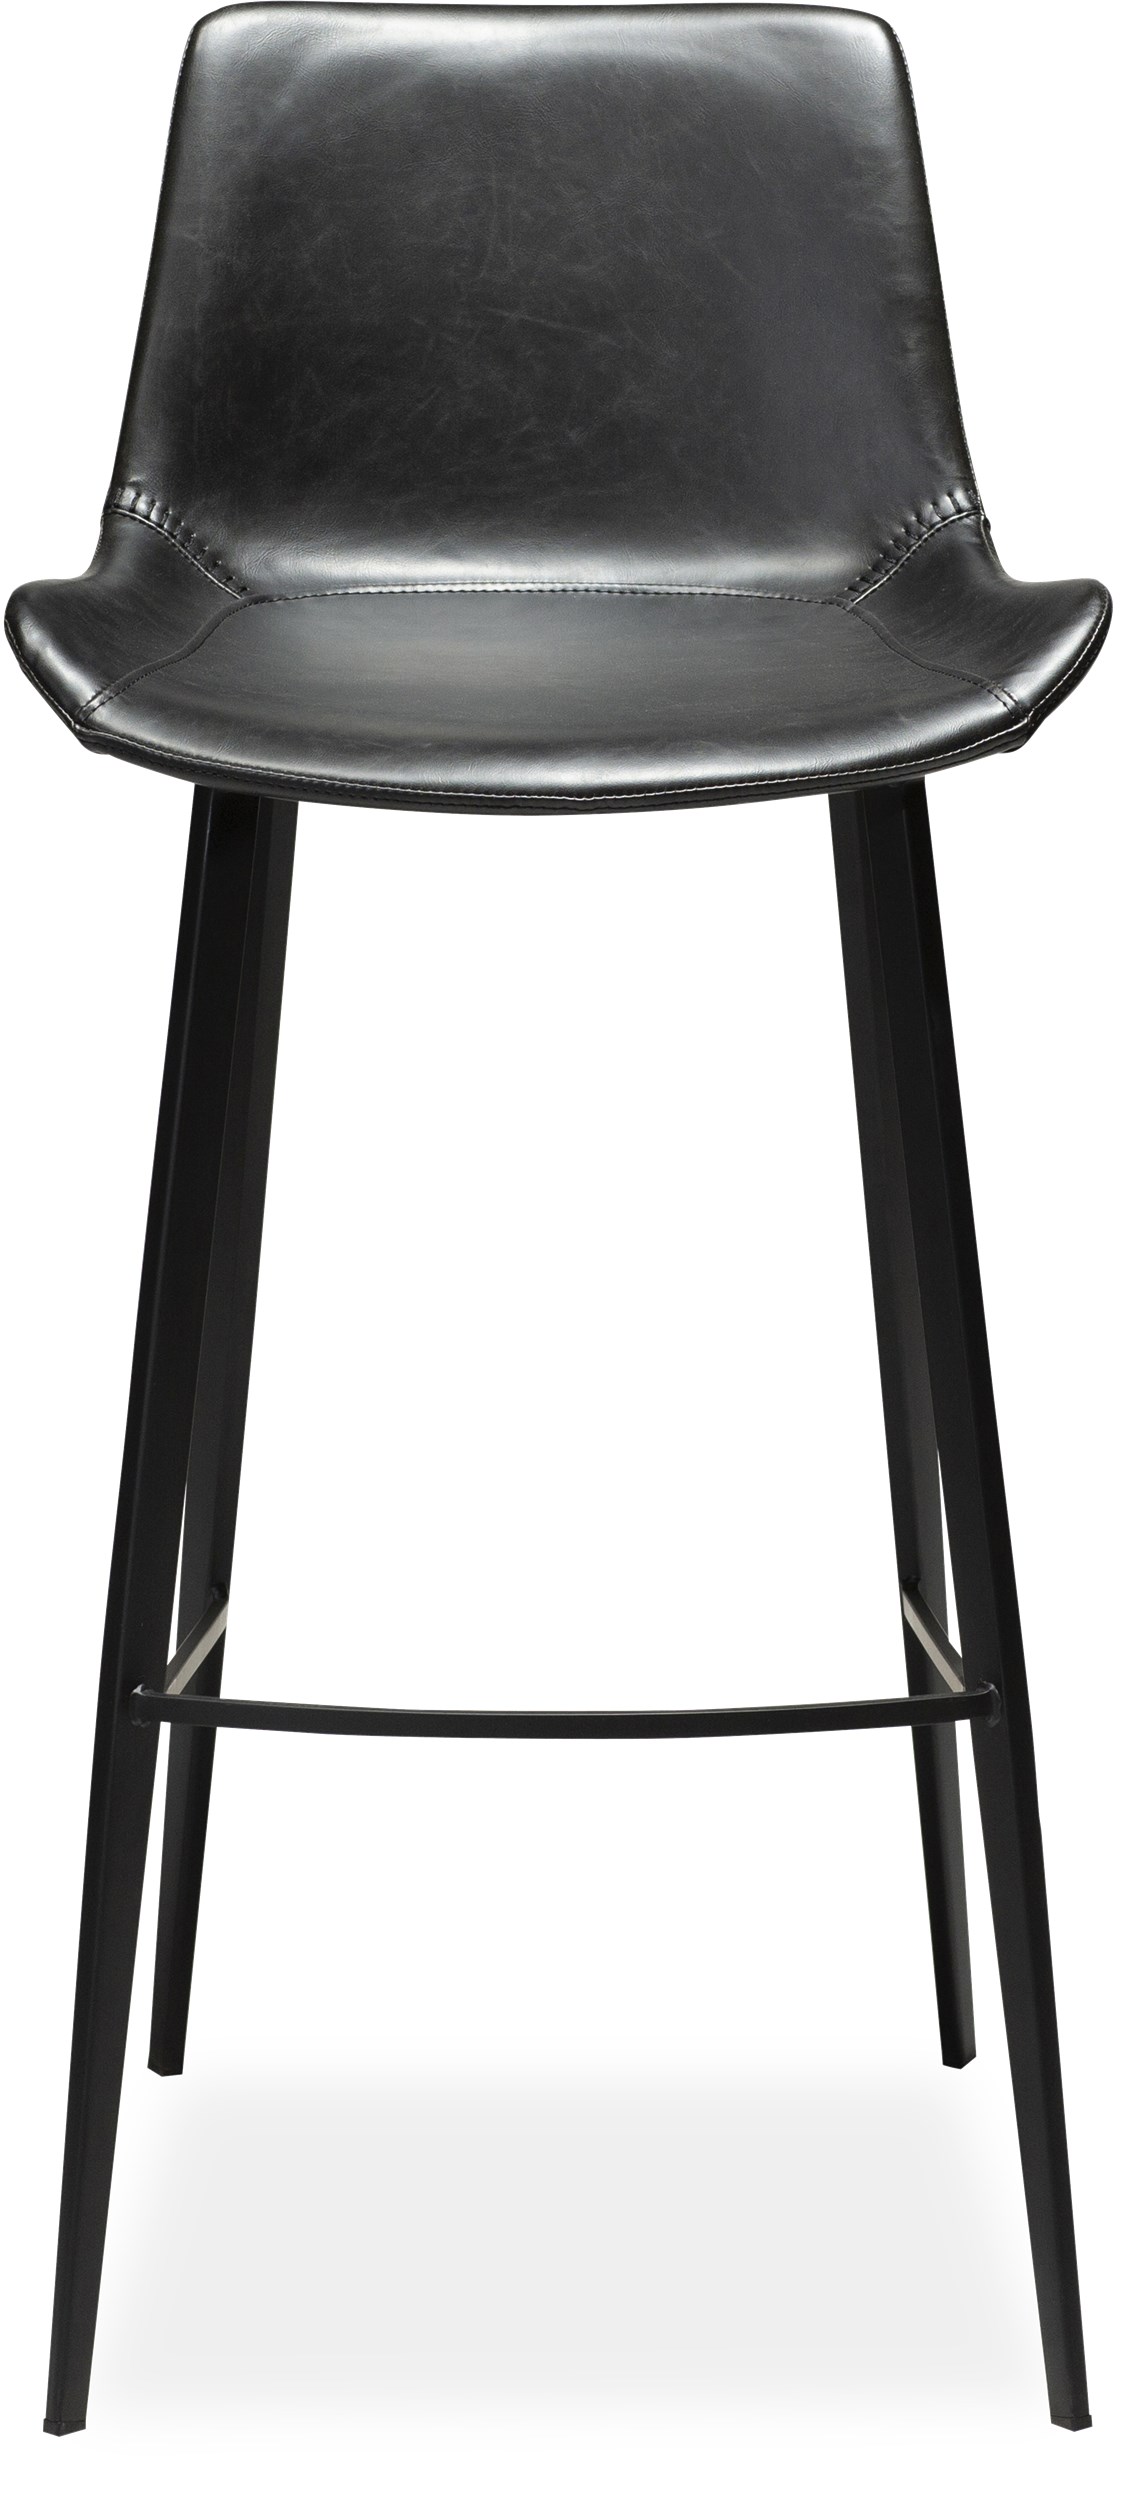 Hype Barstol - sæde i sort vintage kunstlæder og ben i sortlakeret metal